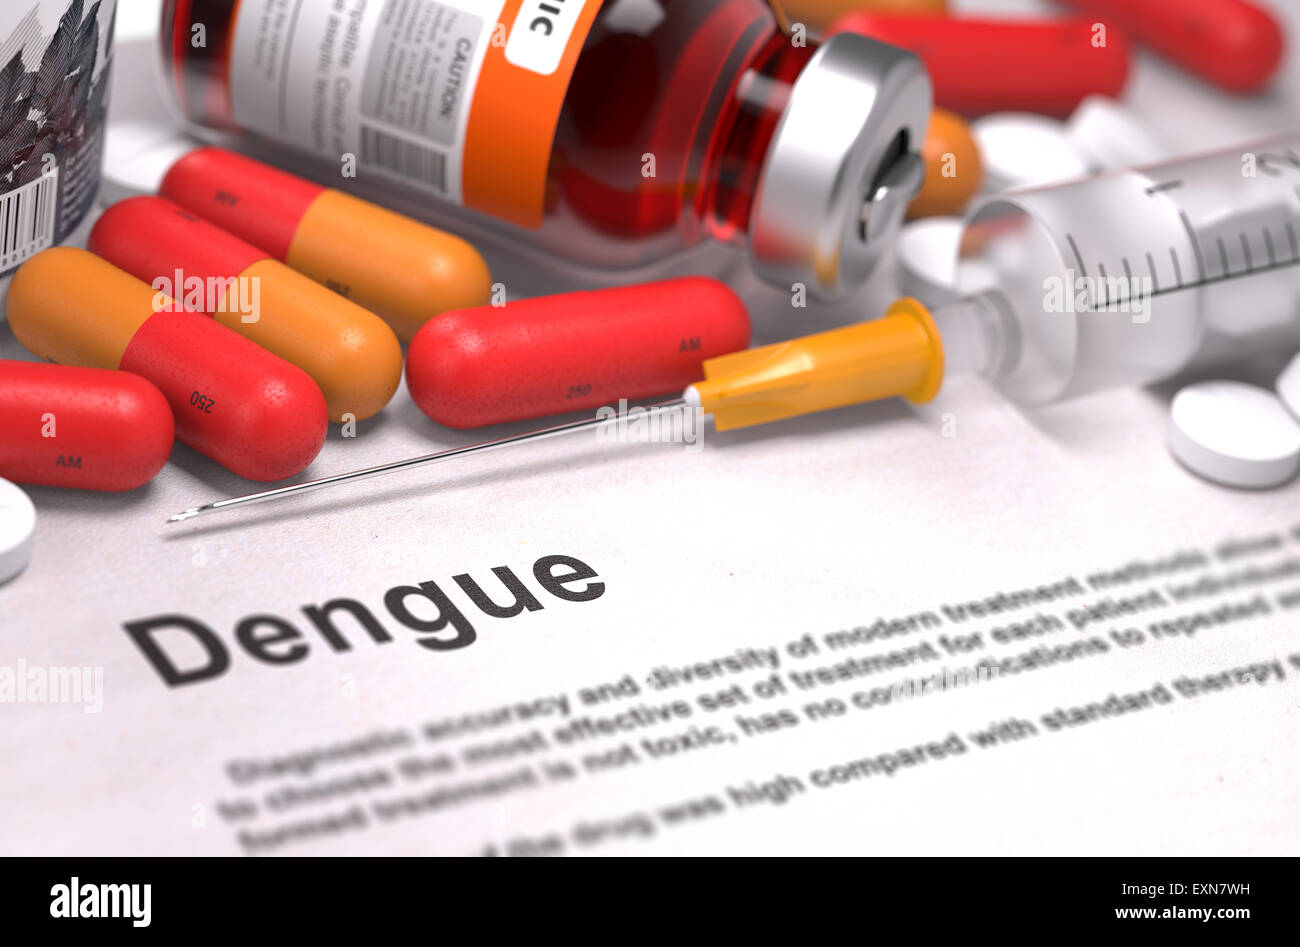 Dengue Diagnosis. Medical Concept. Stock Photo